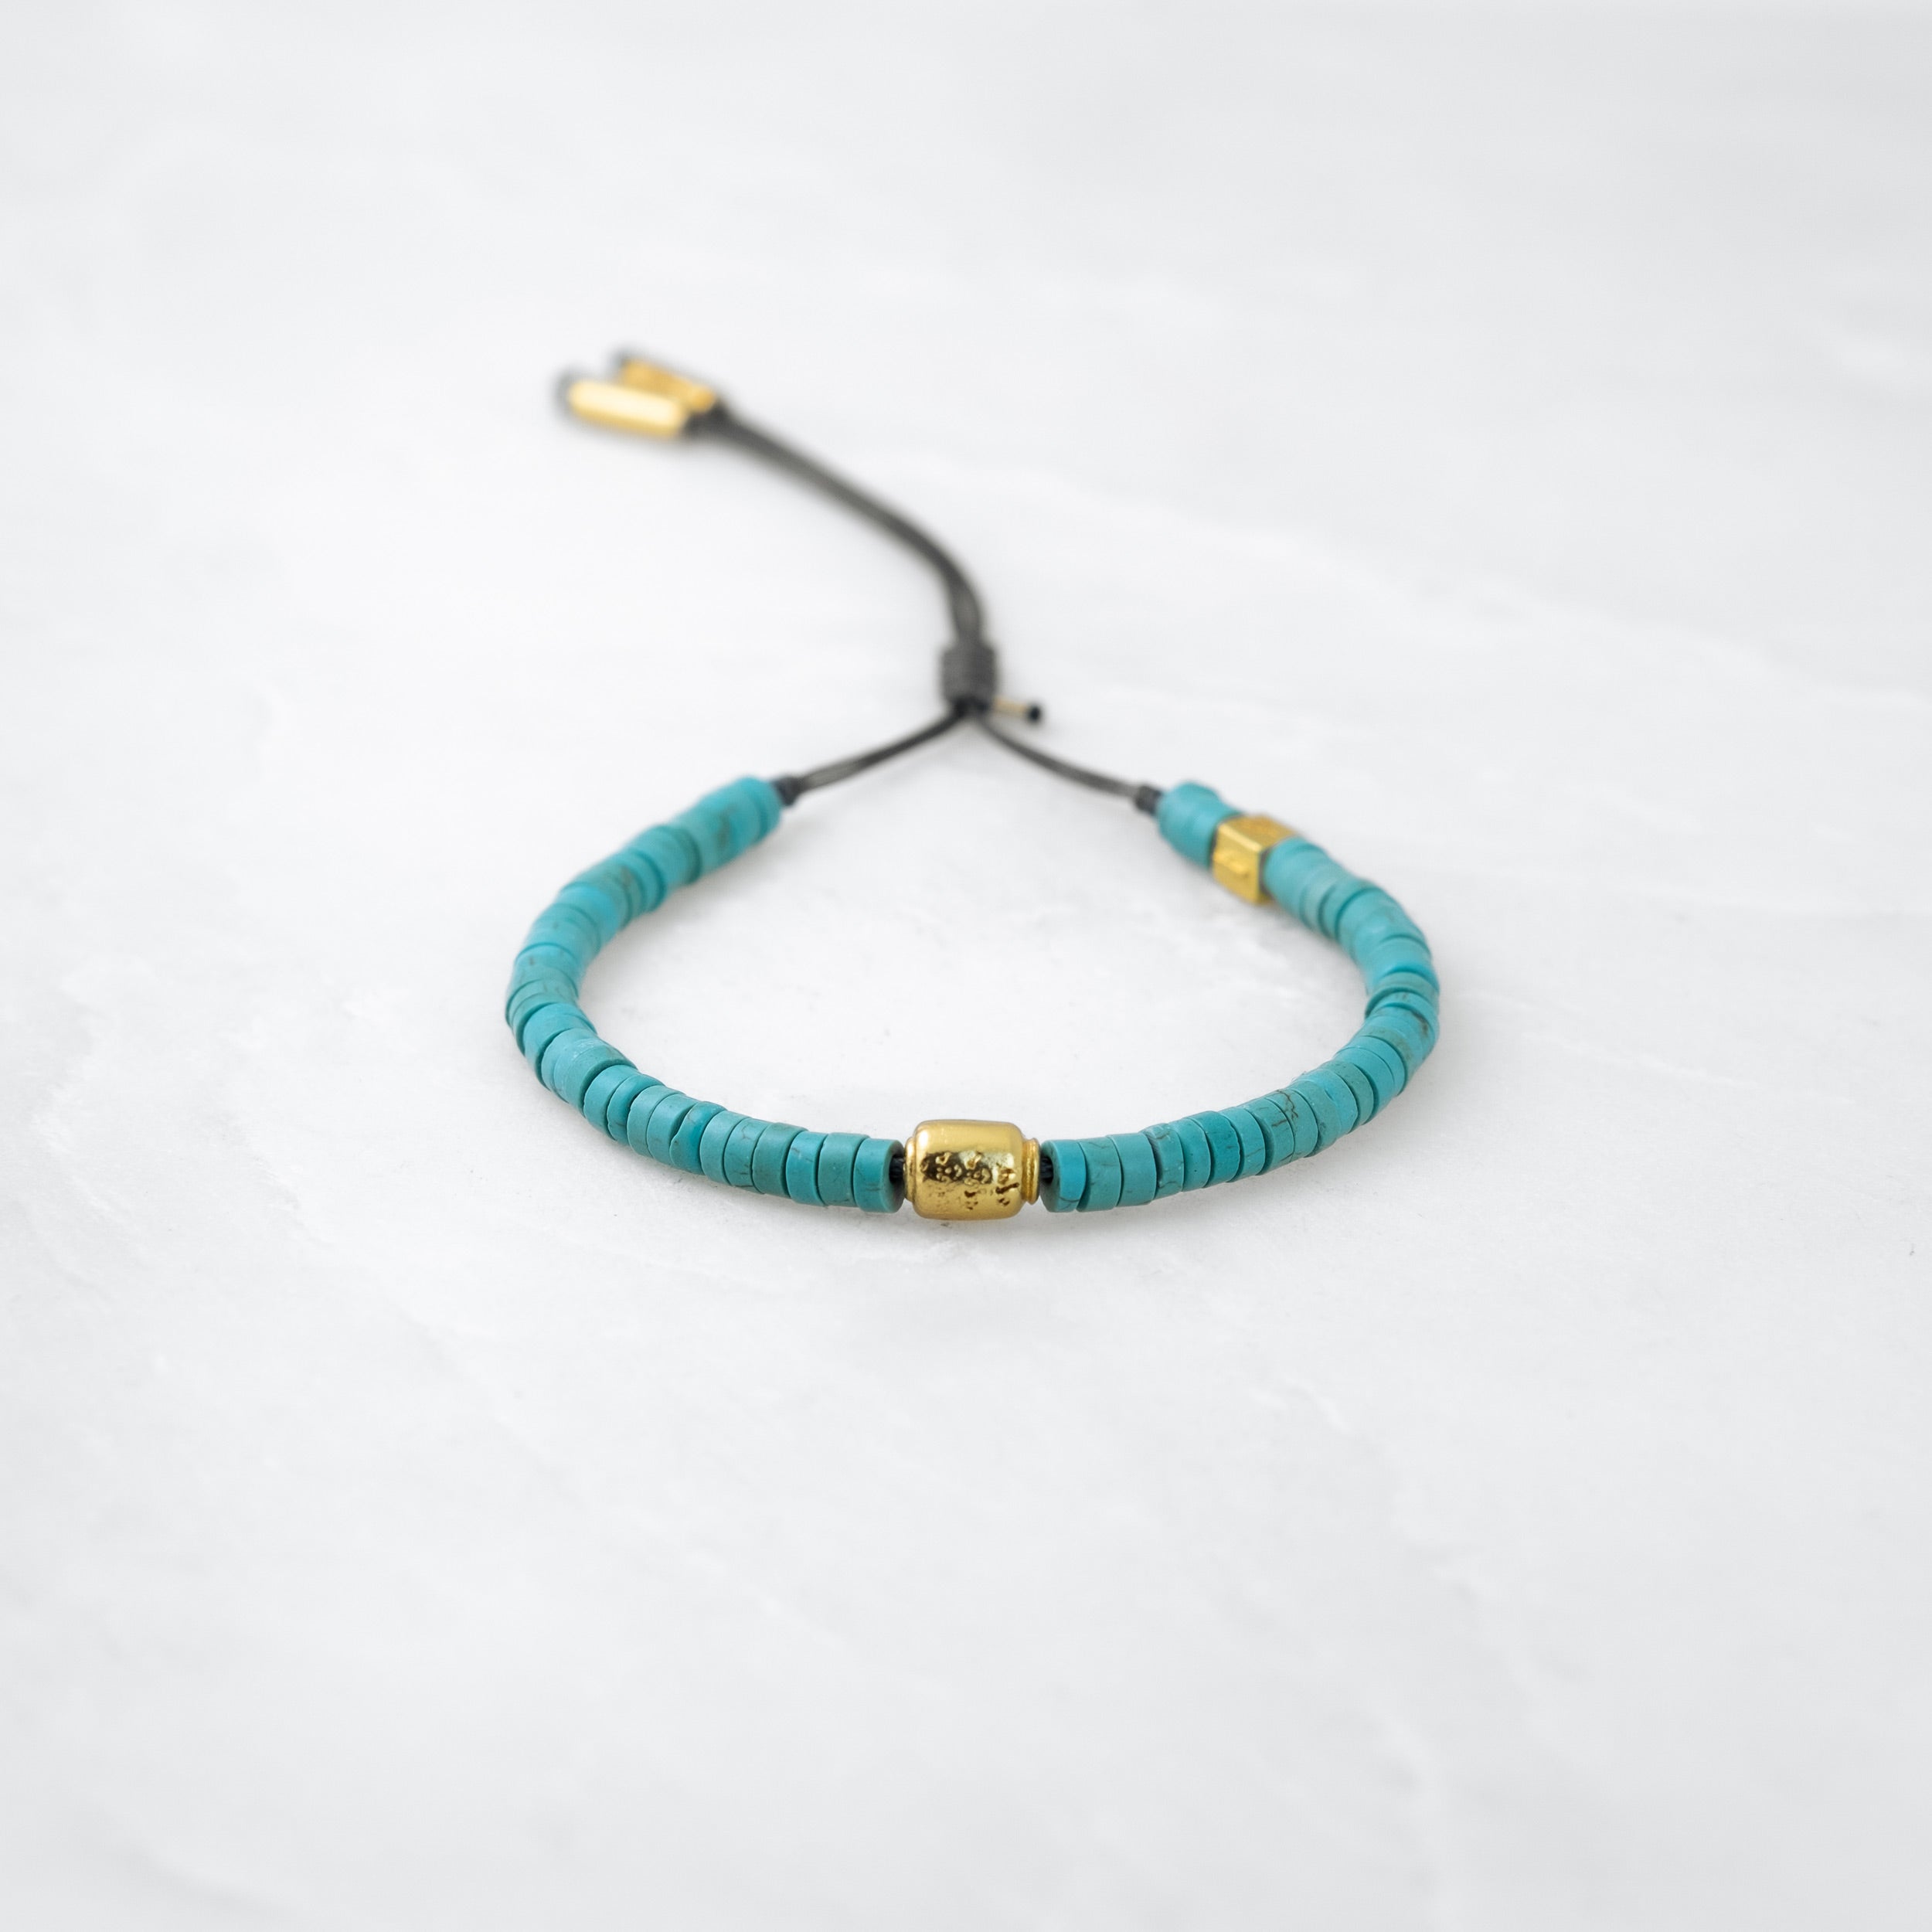 TIBET COLOR bracelet - Turquoise, golden Manikorlo